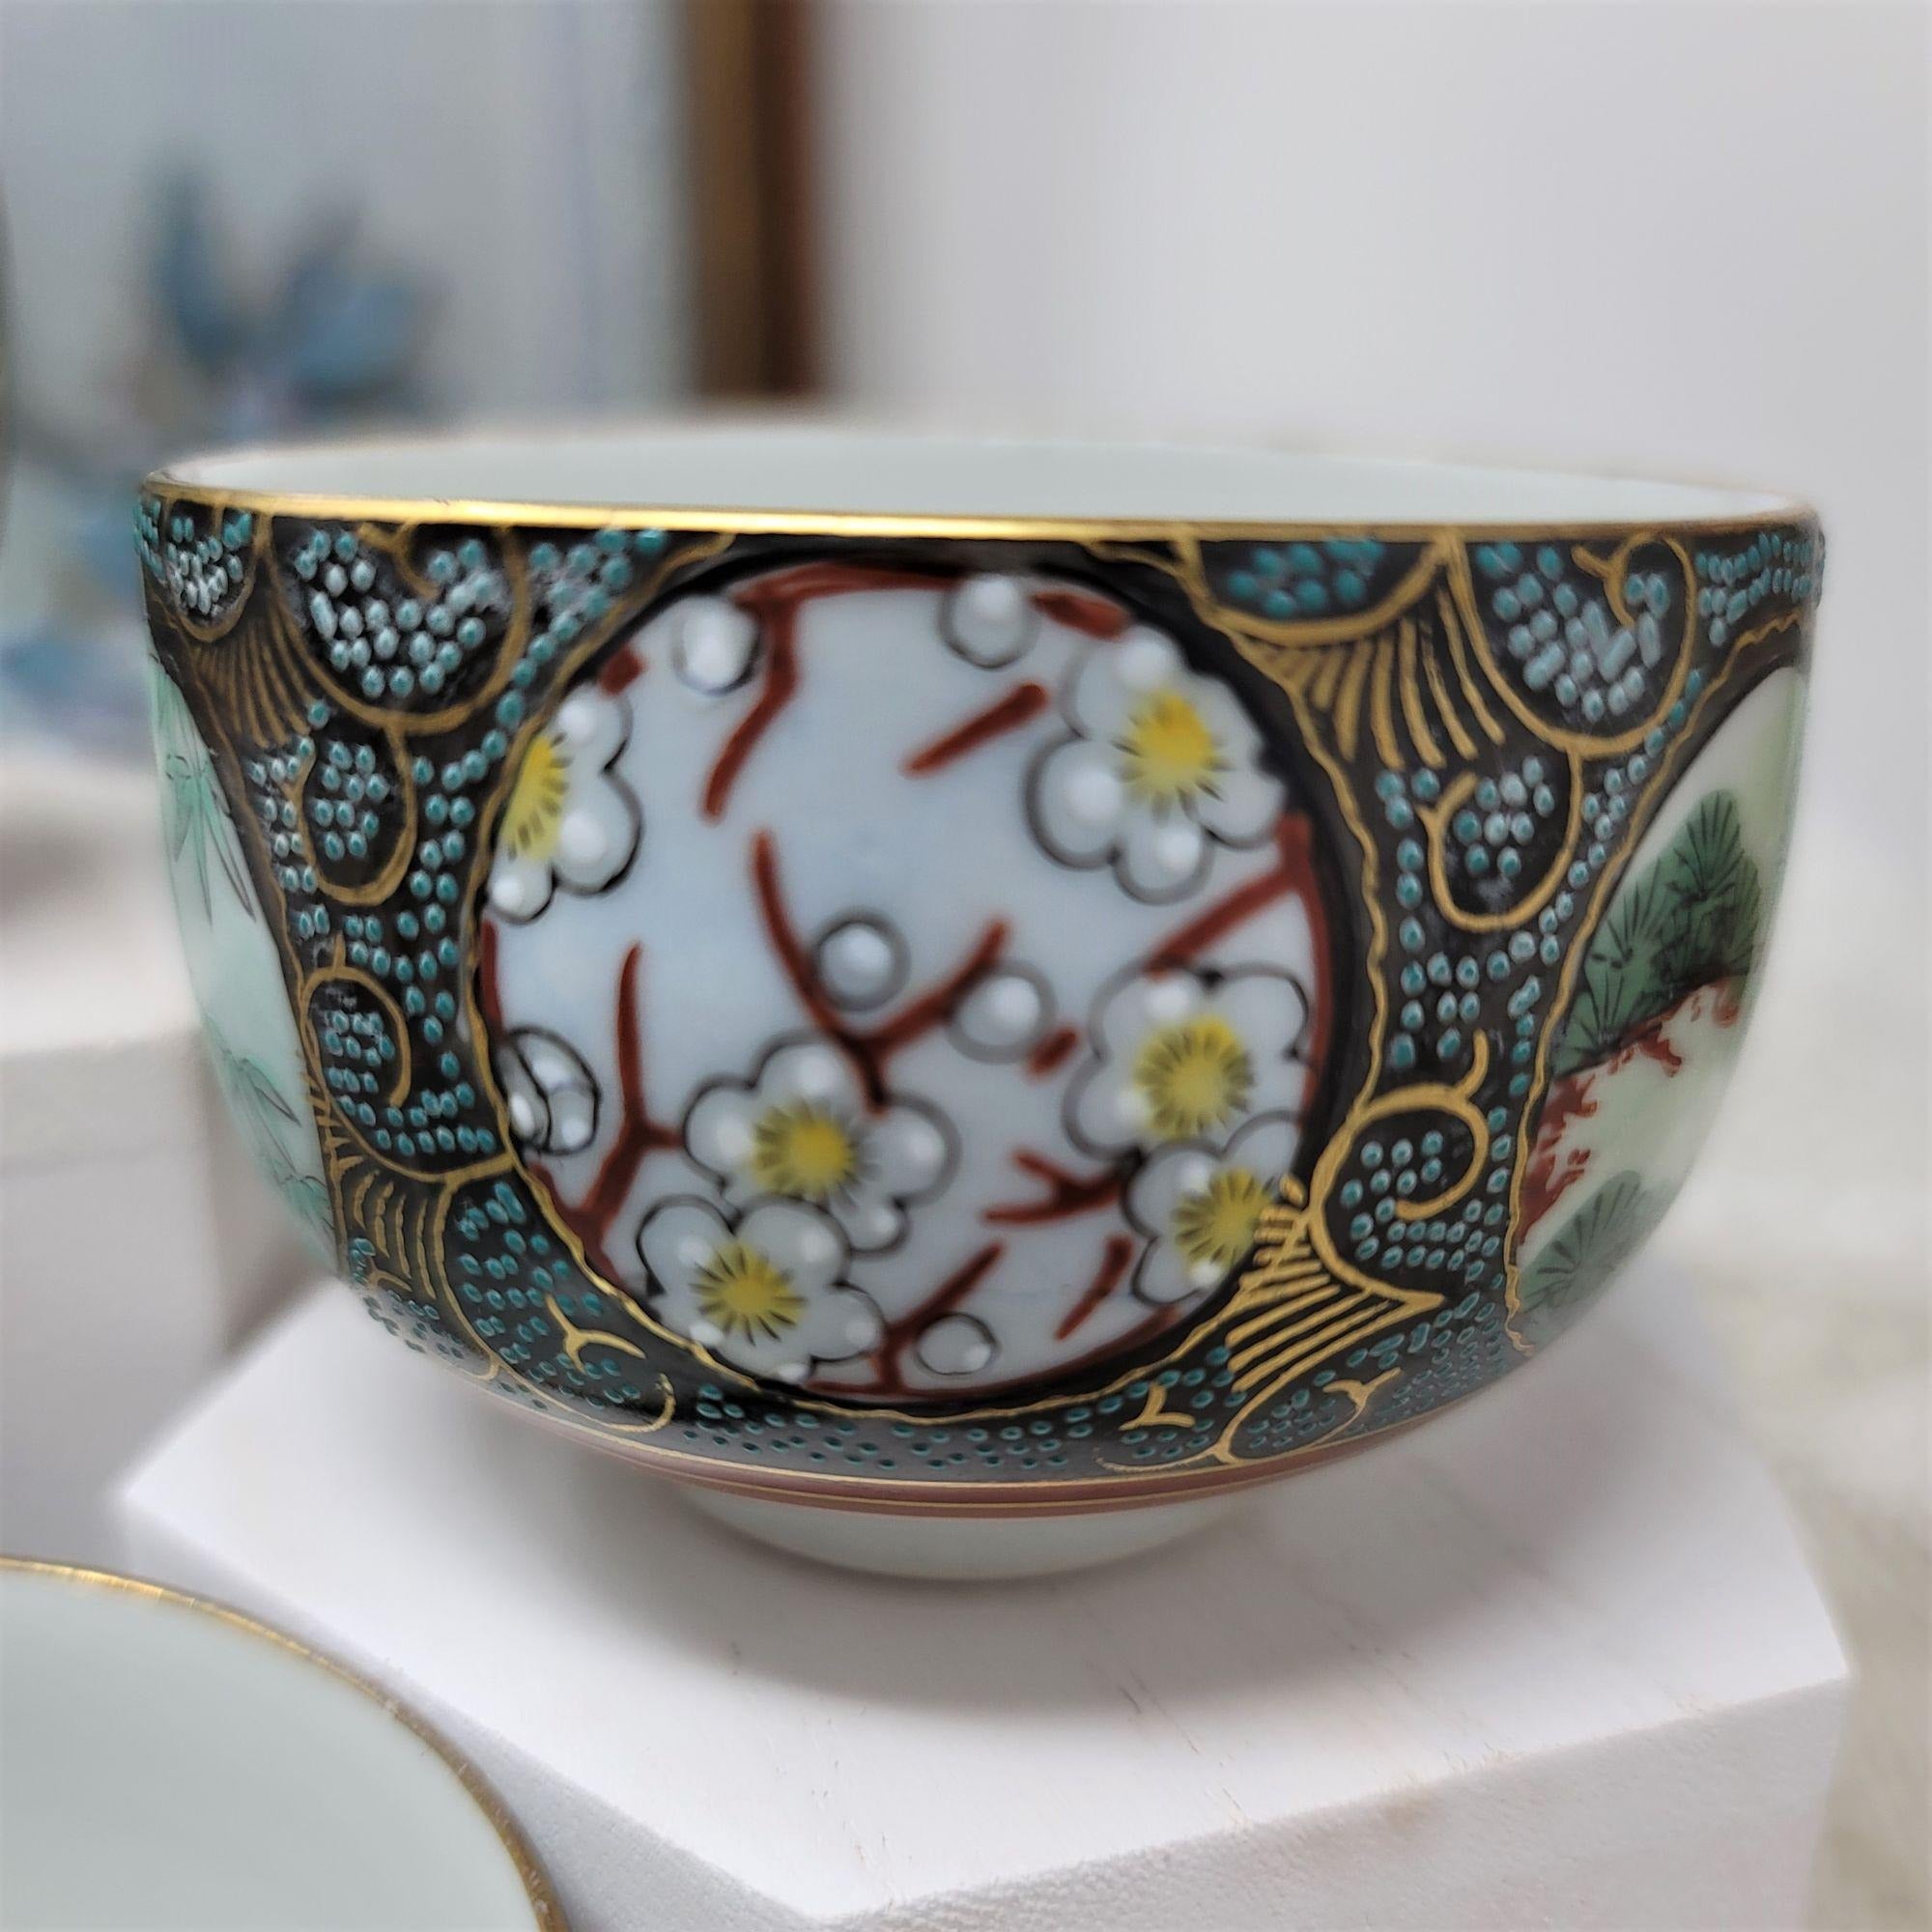 Vintage Made in Japan Tea Cups Set of 5 Raised Pattern